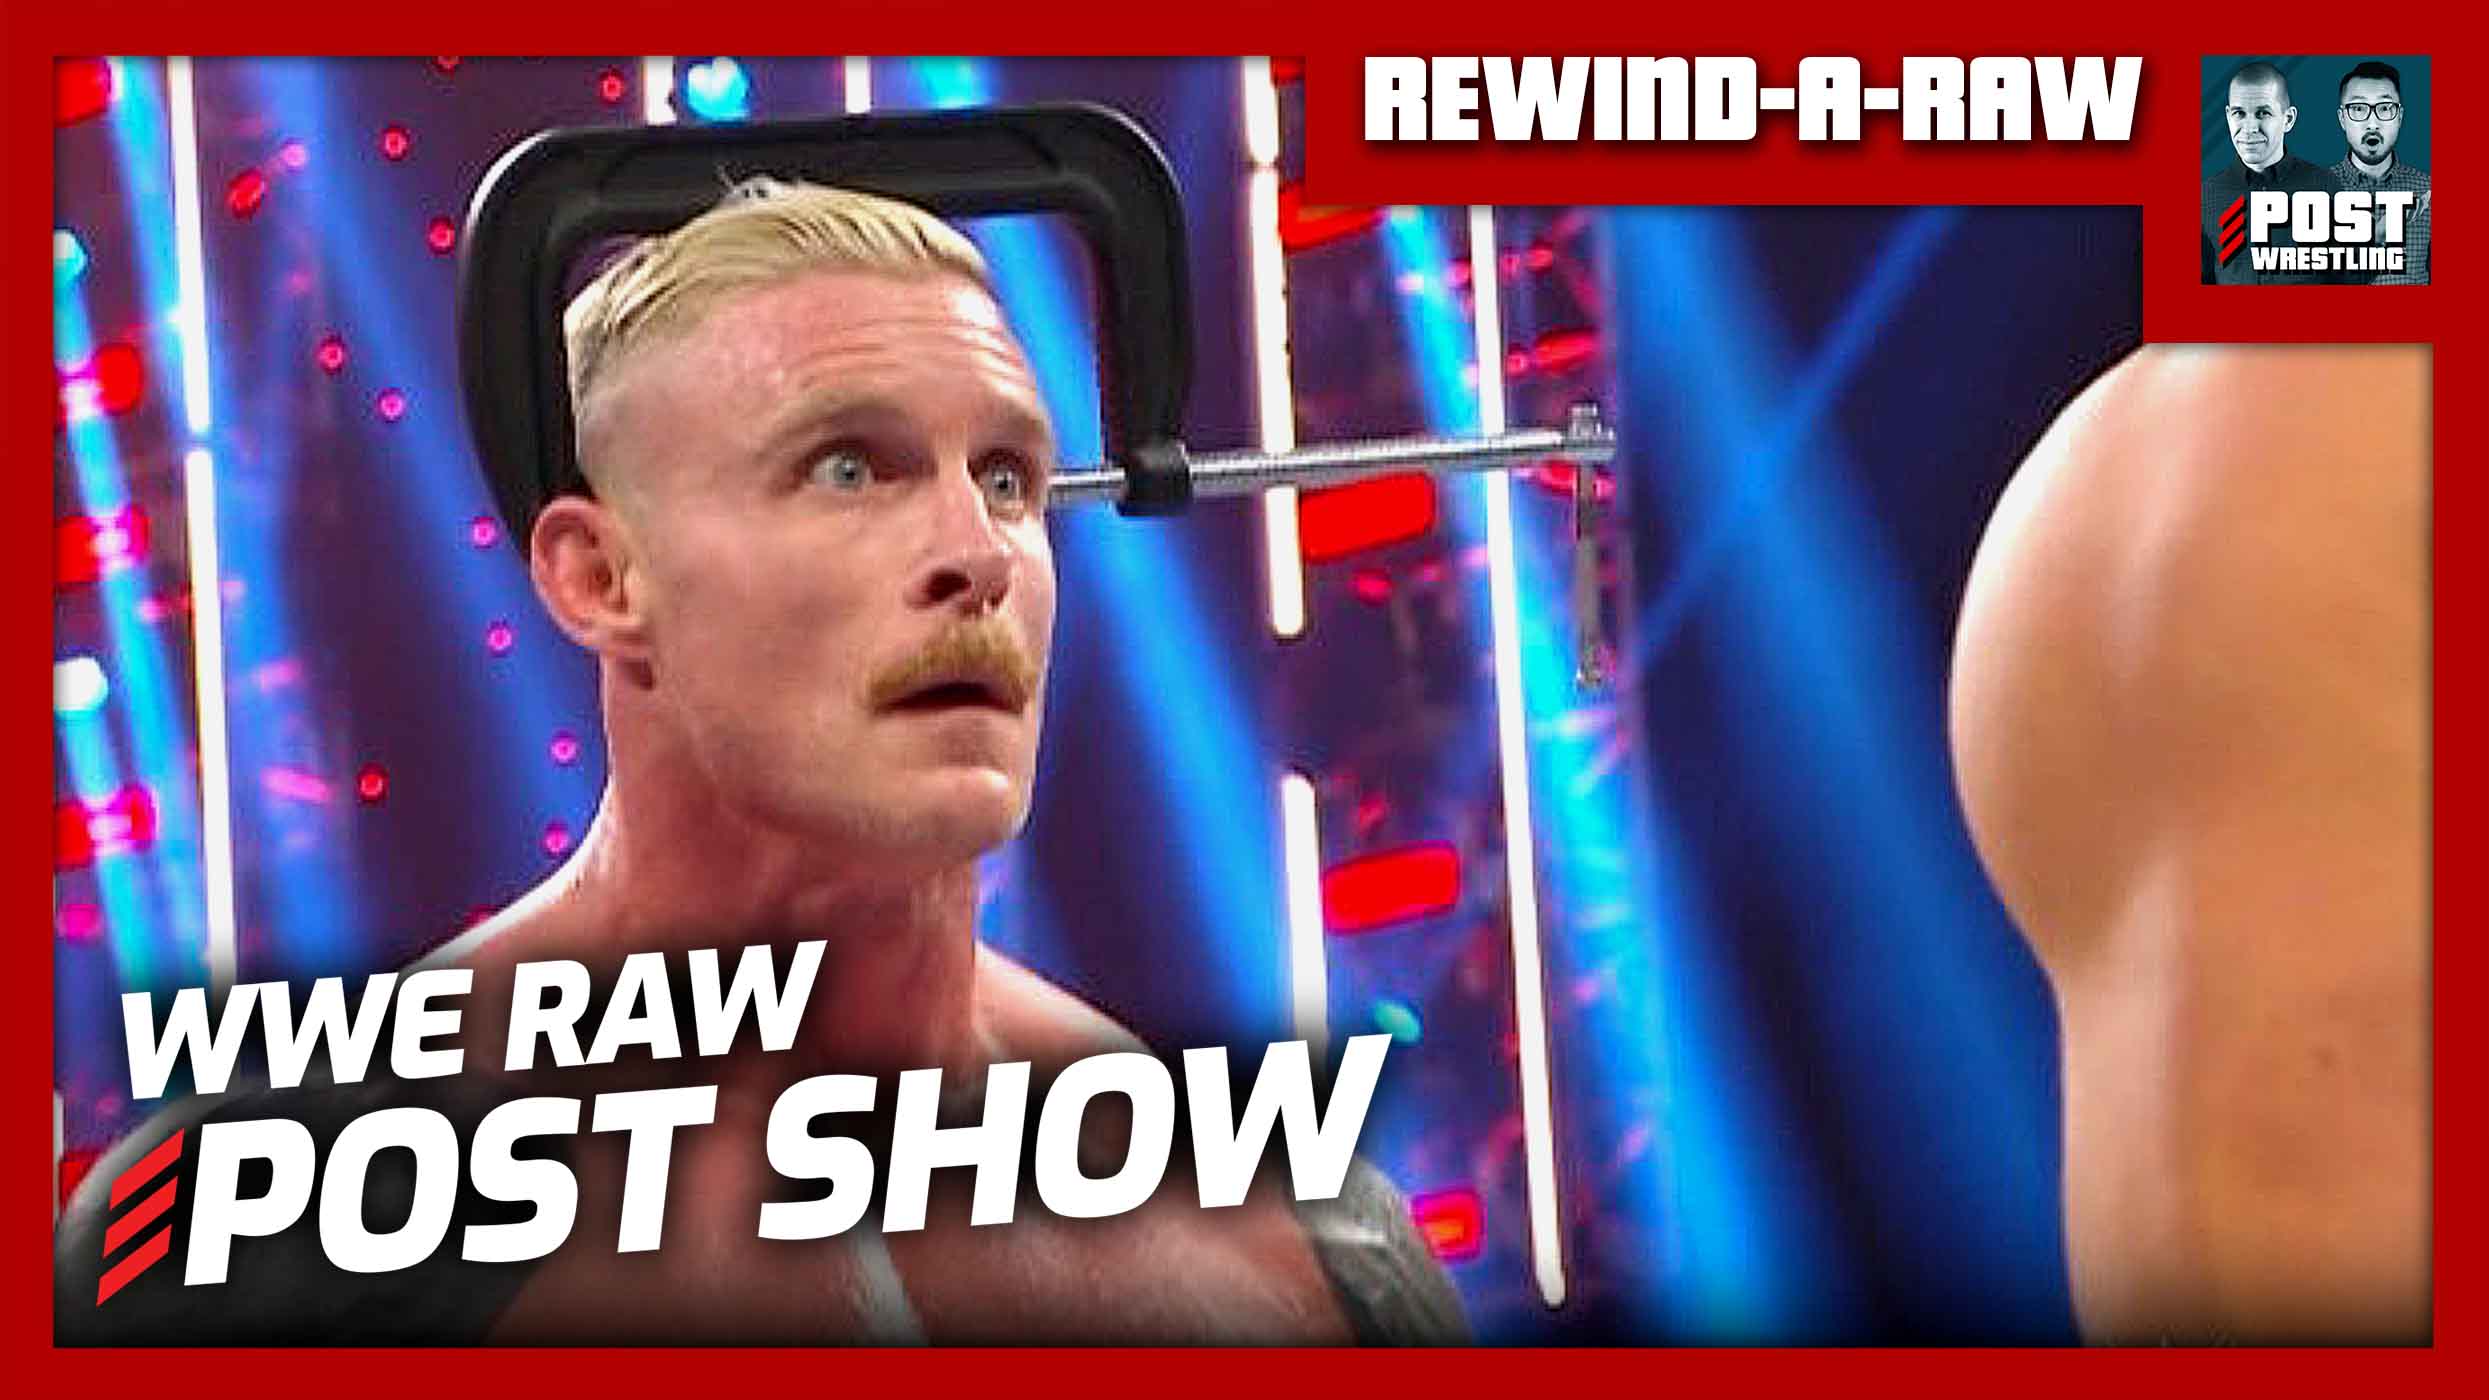 WWE Raw POST Show REWIND A RAW POST Wrestling WWE AEW NXT NJPW Podcasts News